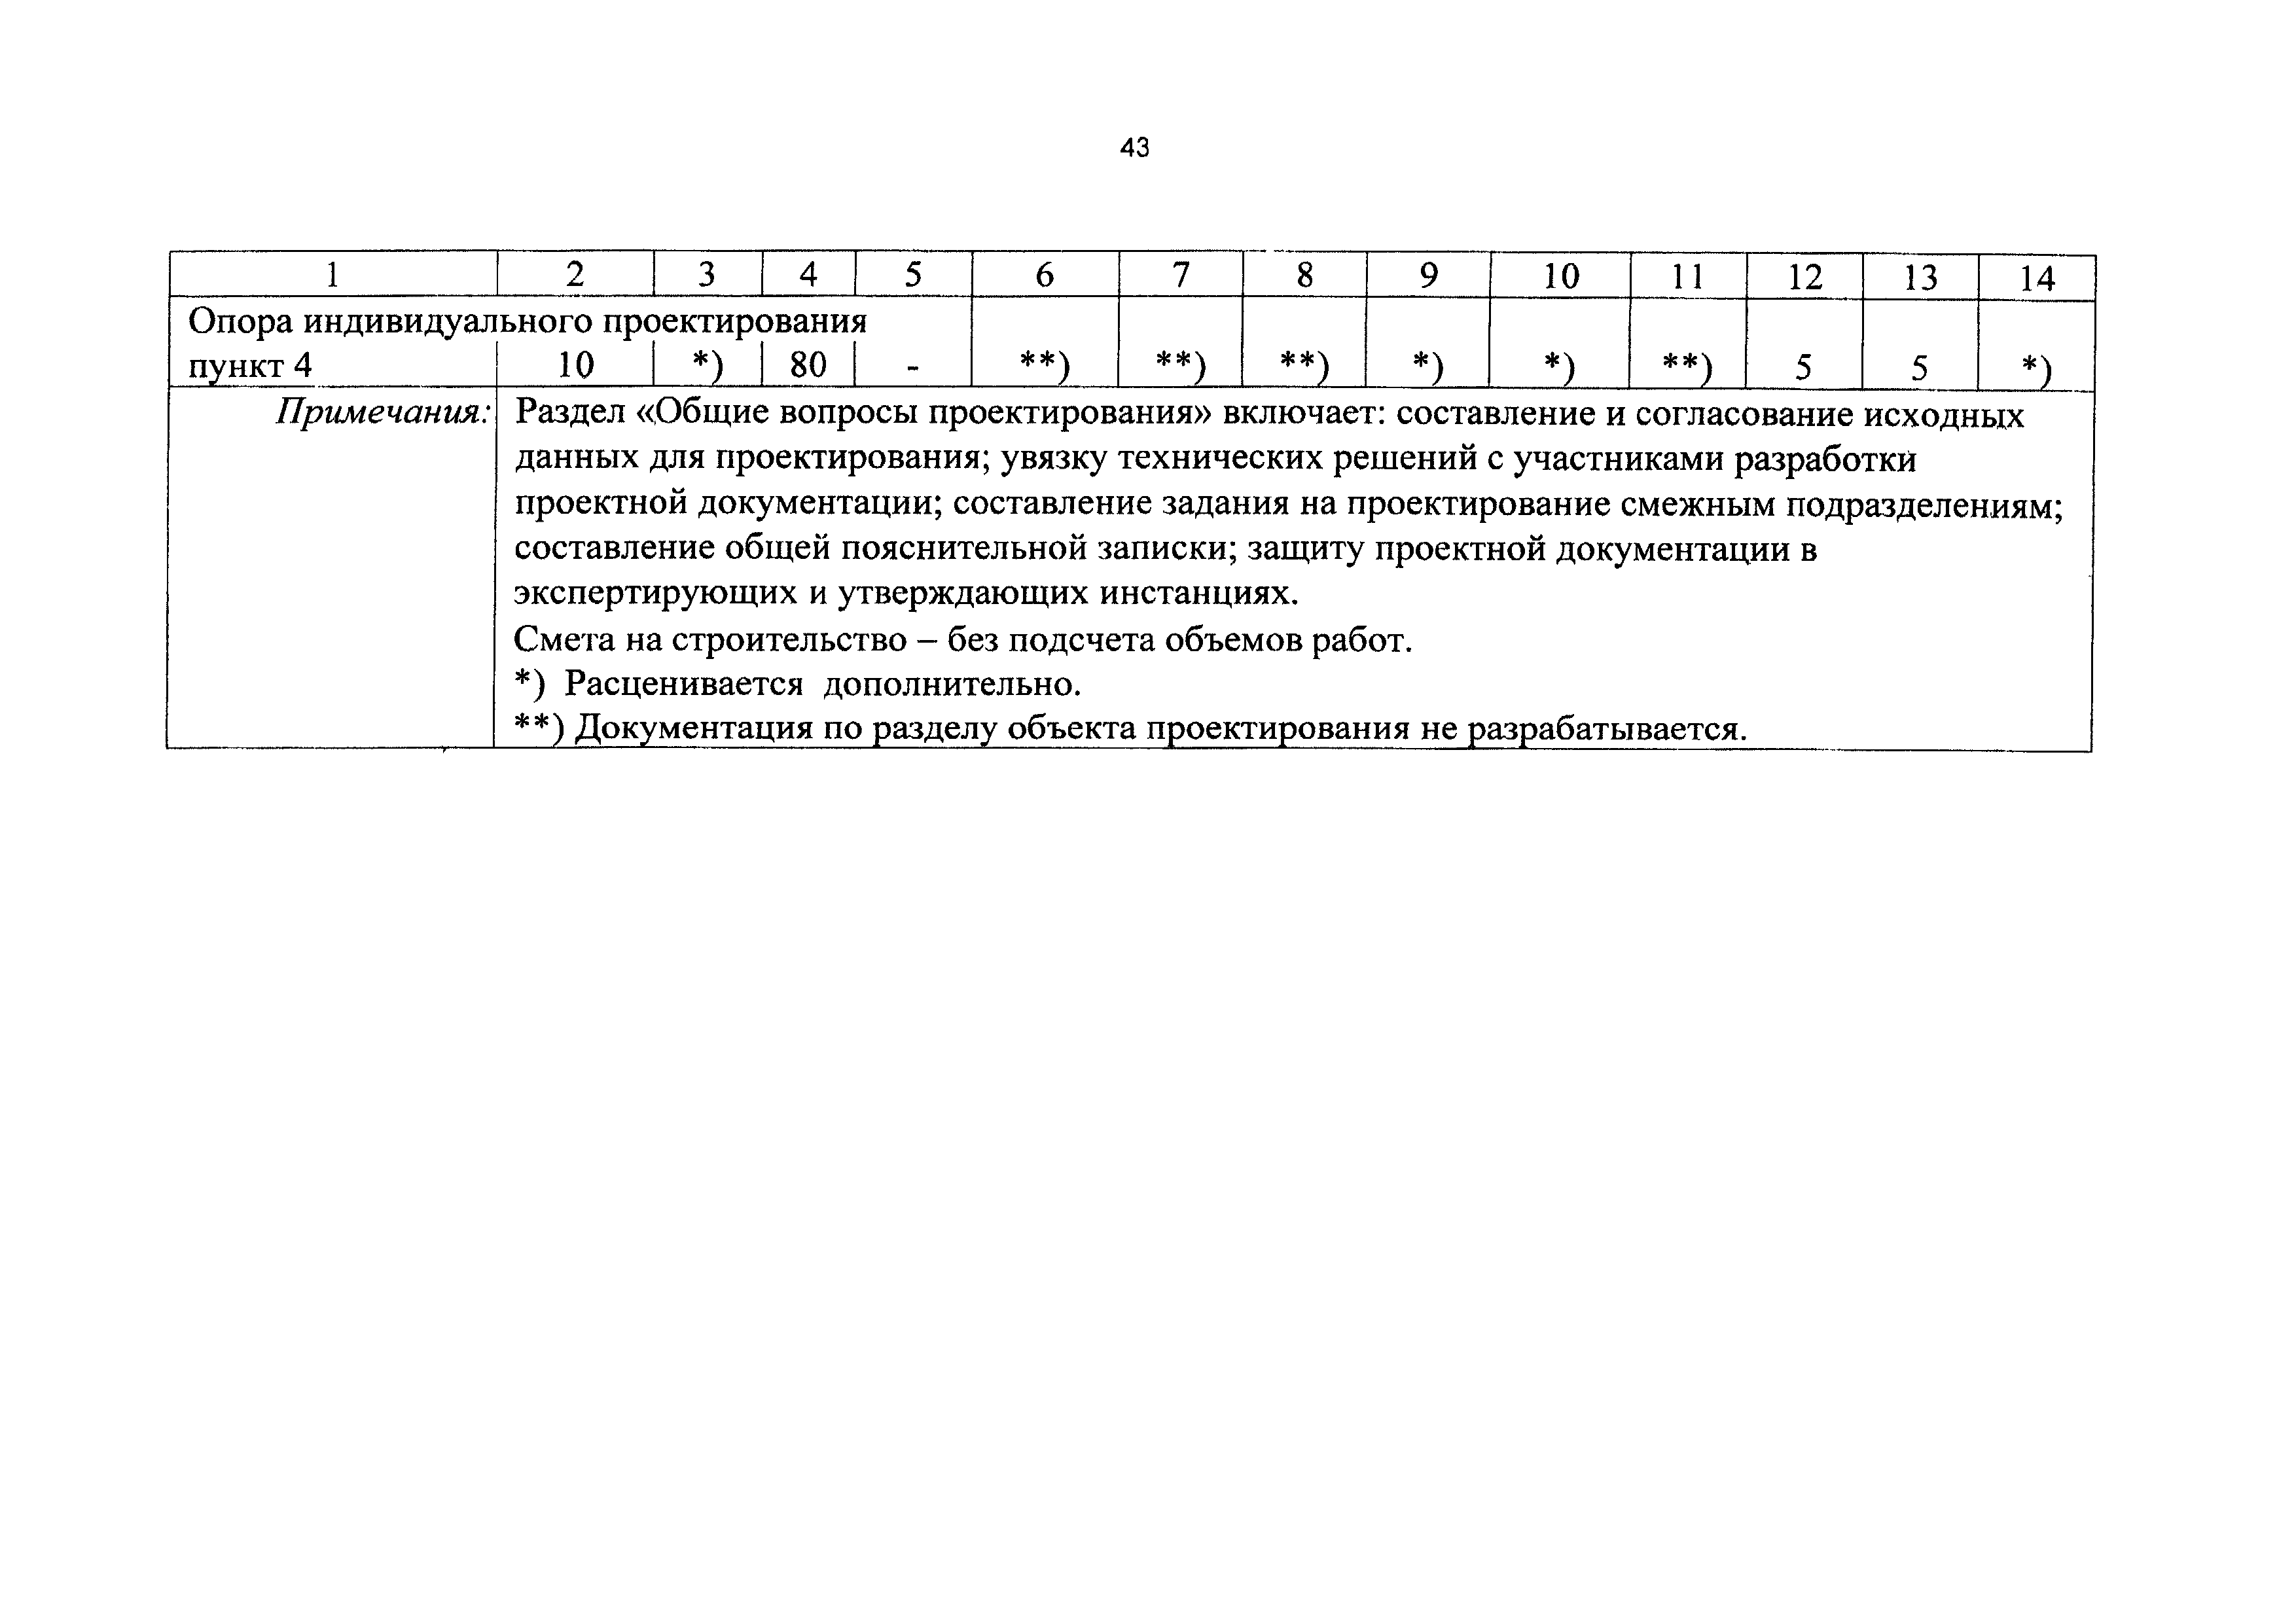 СБЦП 81-2001-16